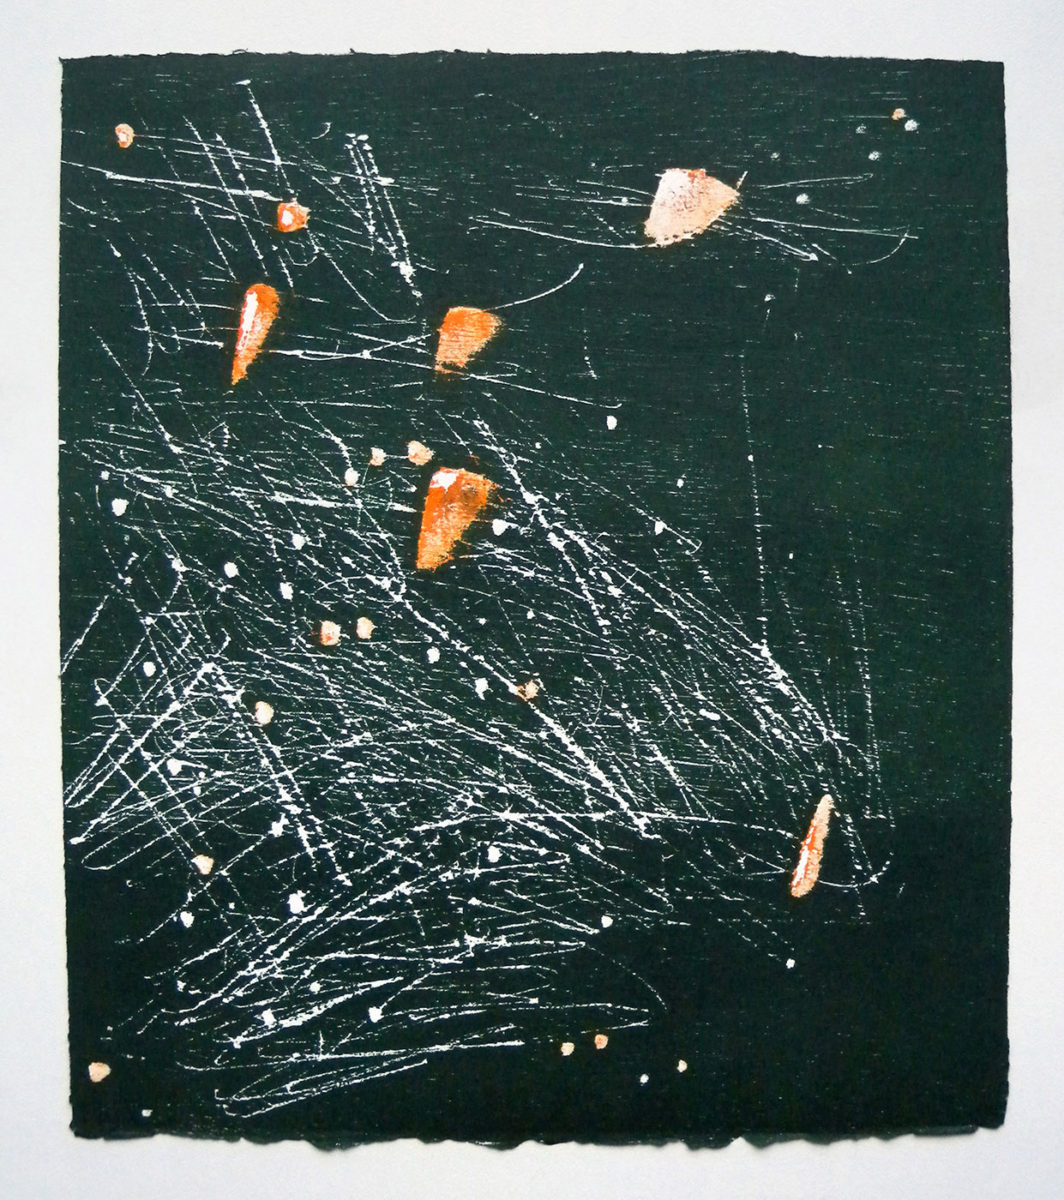 MARC FELD 2012 SONG FOR STEVE LACY 3 Gravure sur bois encre sur papier 25 x 26 cm (Tirage Patrick Vernet)